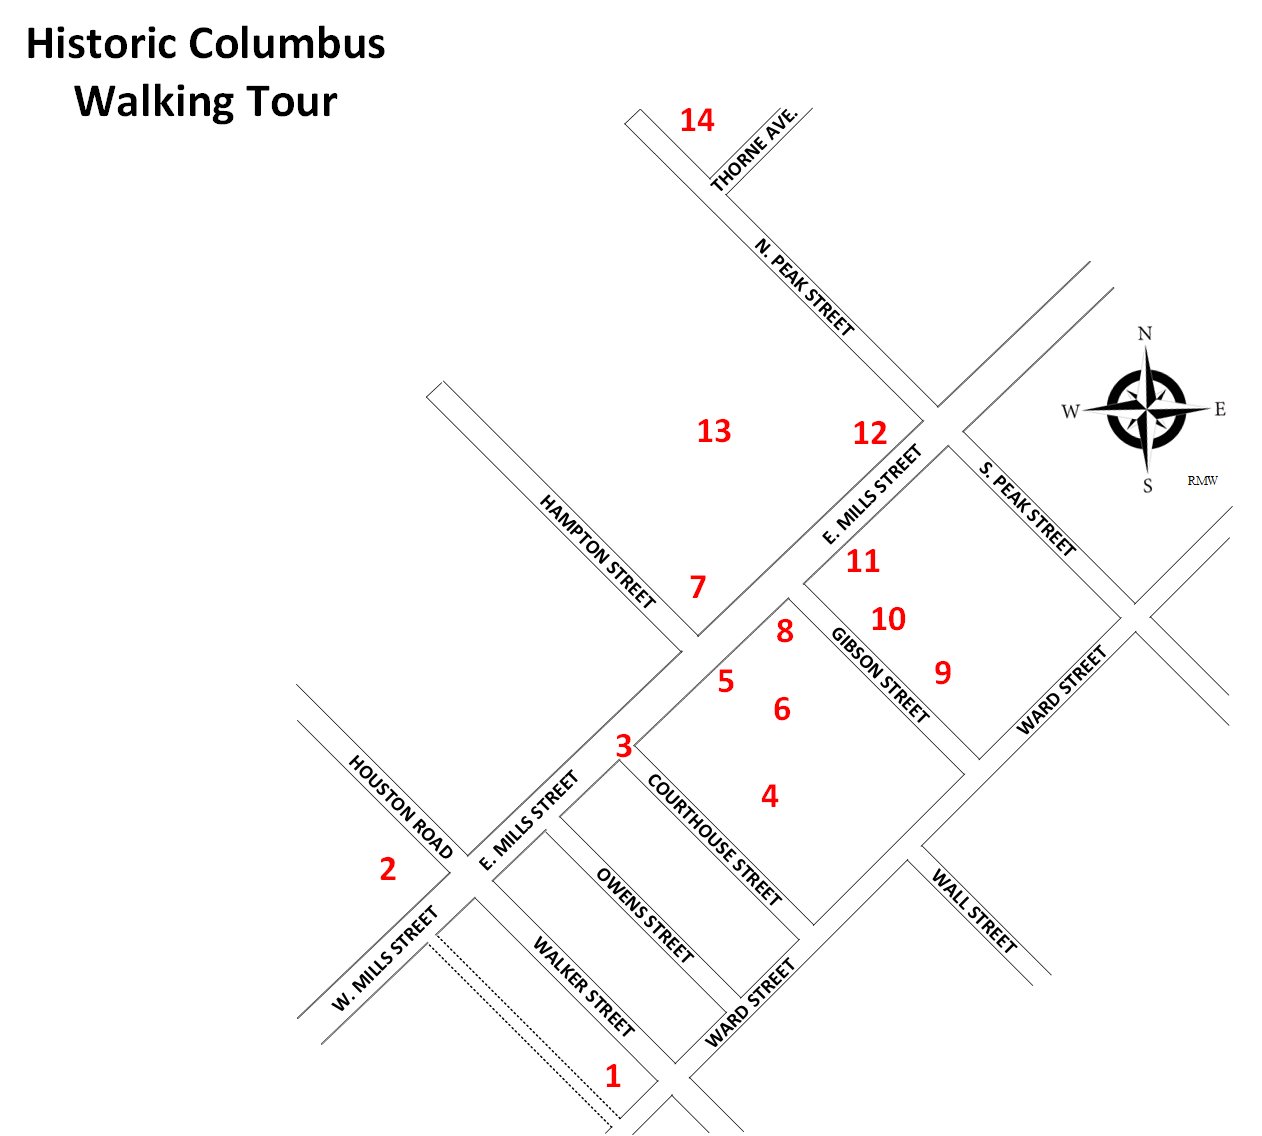 Historic Columbus Walking Tour Map